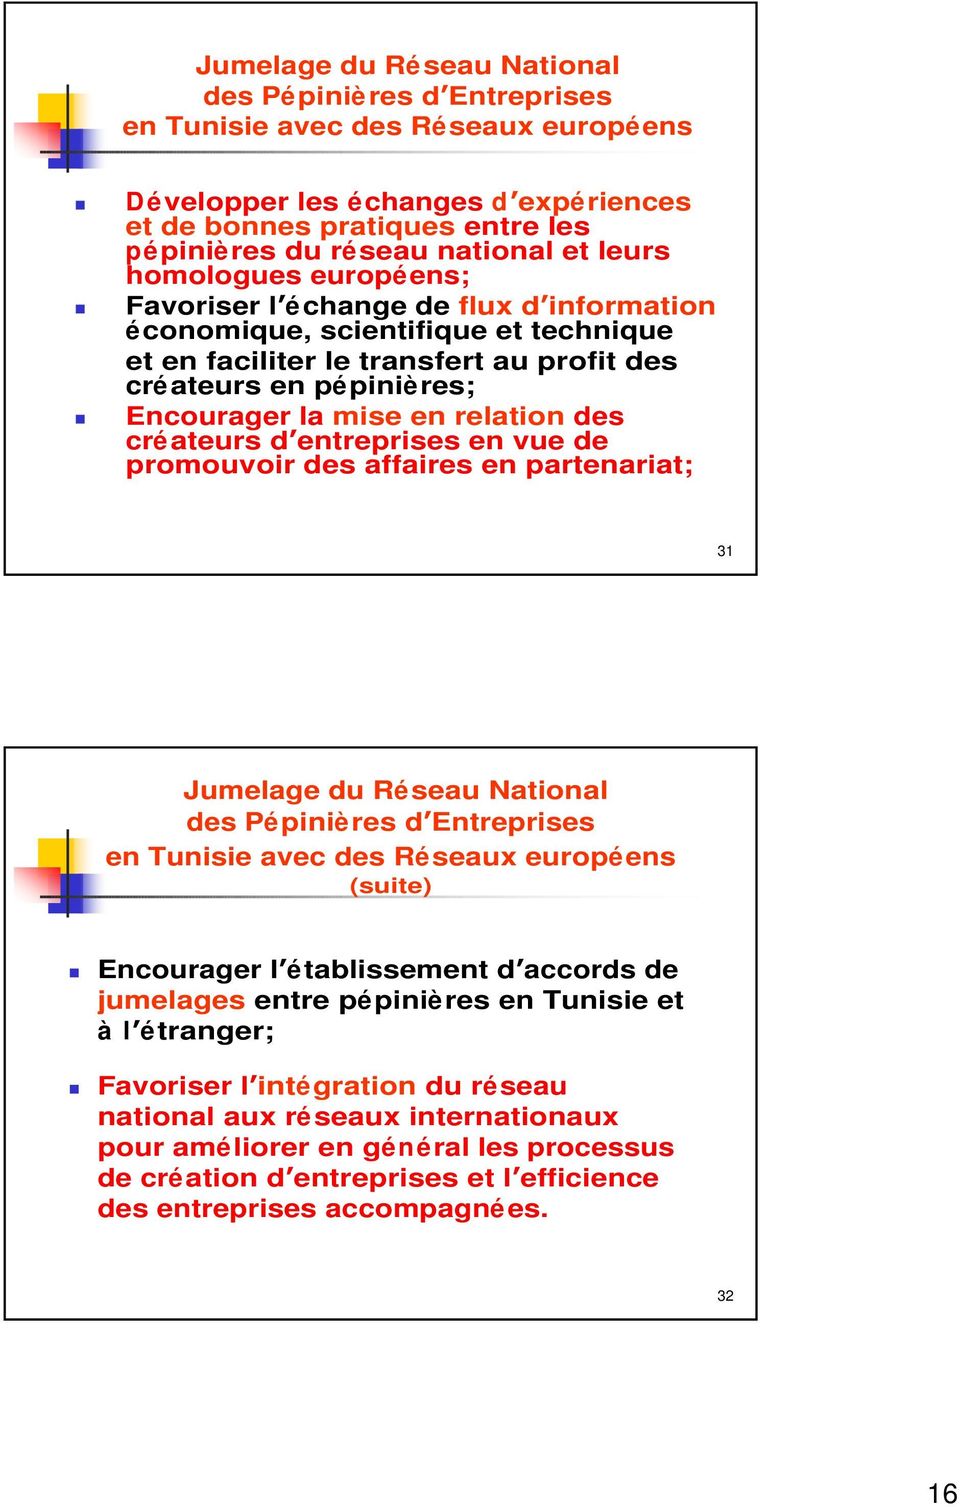 relation des créateurs d entreprises en vue de promouvoir des affaires en partenariat; 31 Jumelage du Réseau National des Pépinières d Entreprises en Tunisie avec des Réseaux européens (suite)